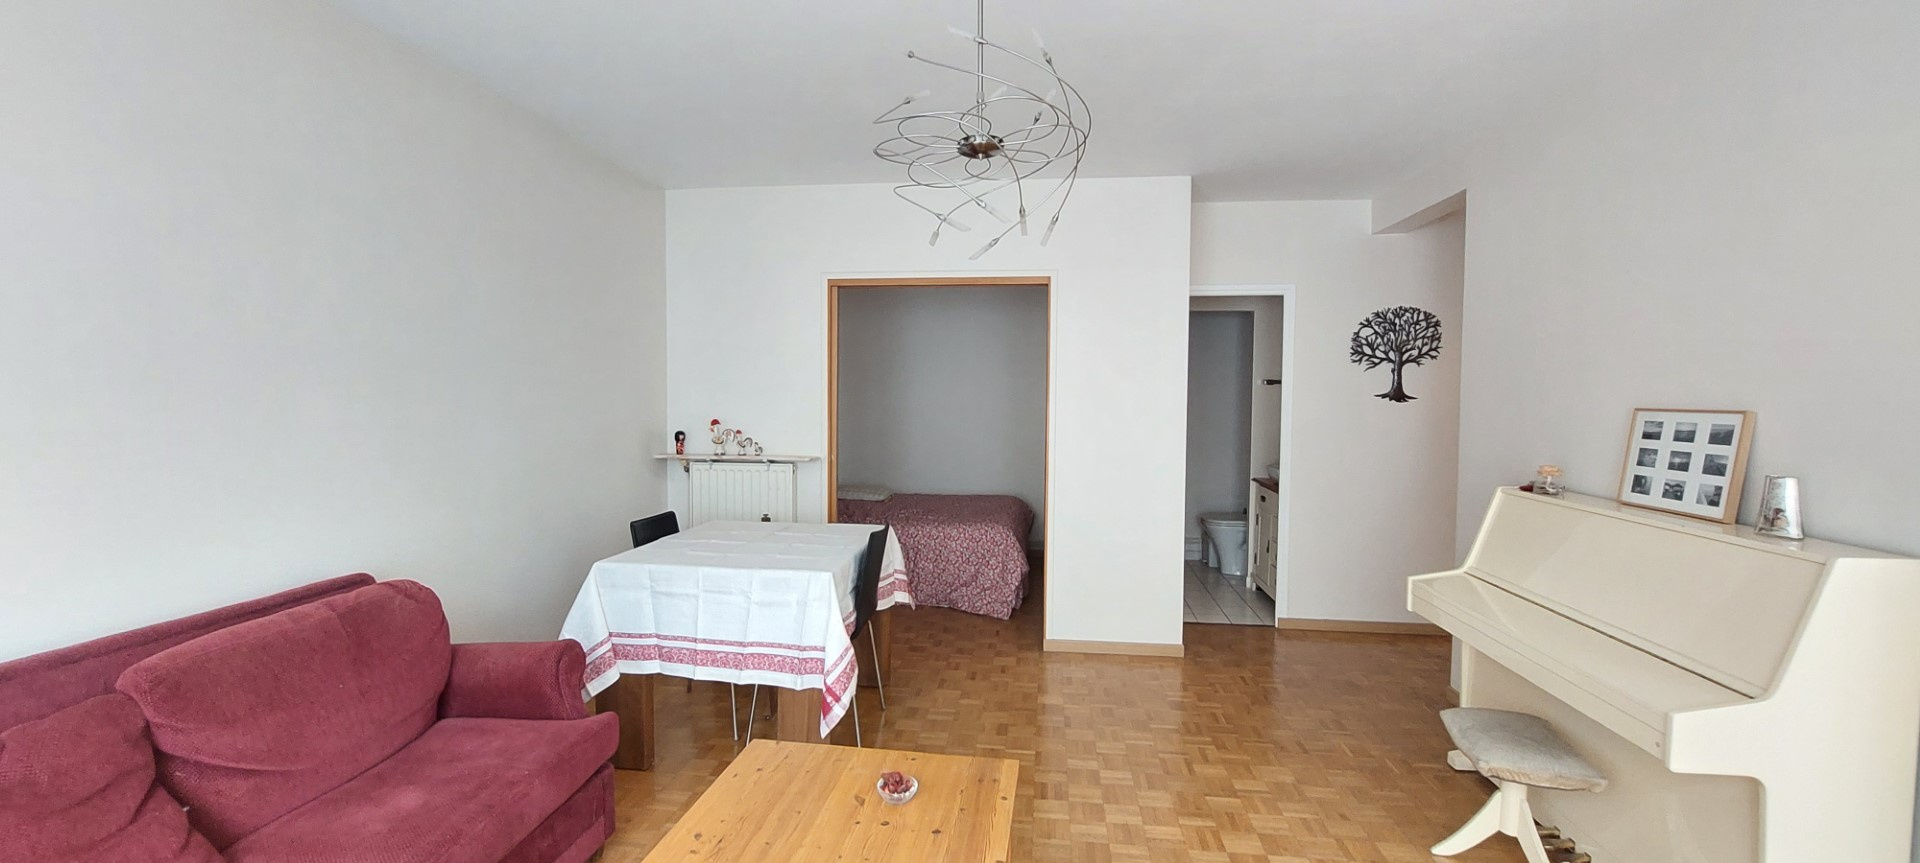 Vente Appartement 44m² 2 Pièces à Courbevoie (92400) - Cph Immobilier